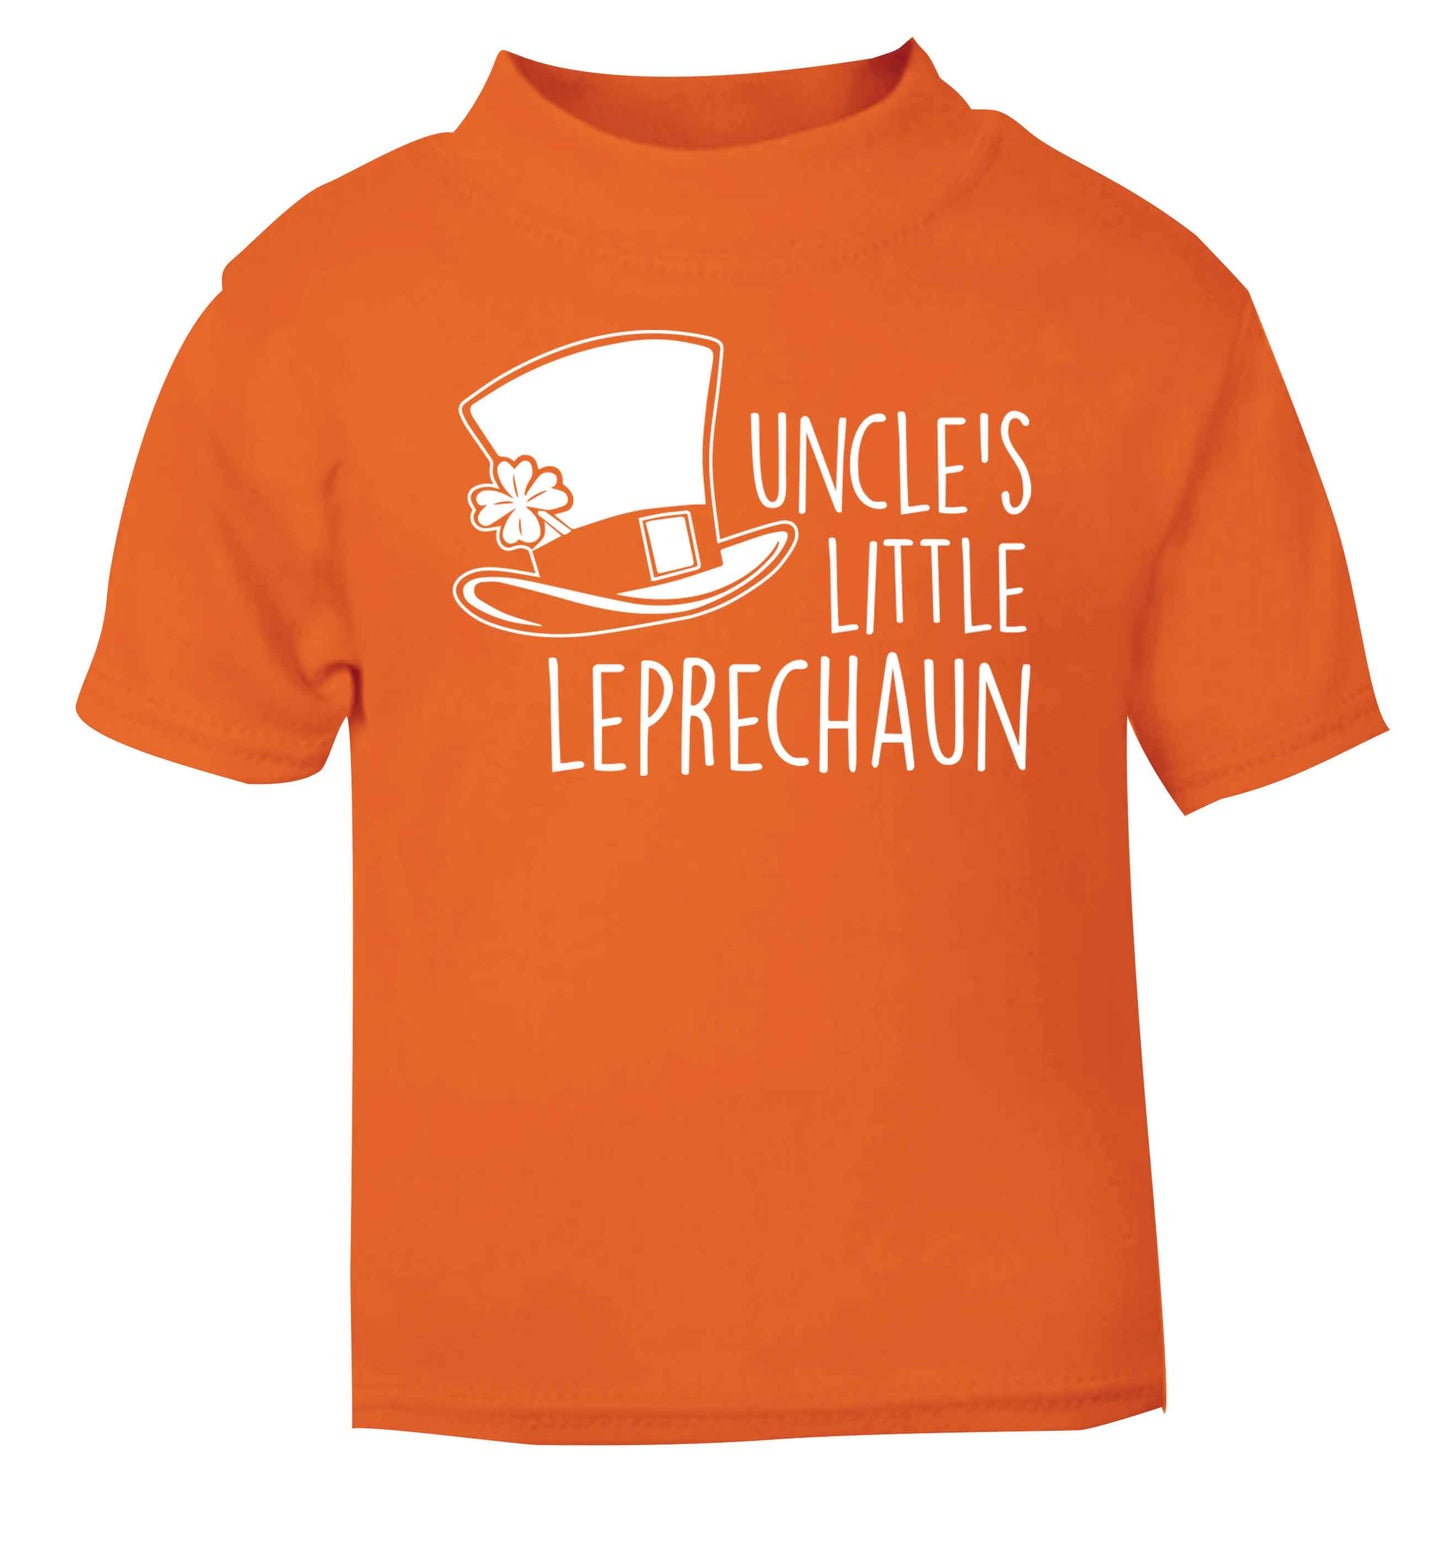 Uncles little leprechaun orange baby toddler Tshirt 2 Years